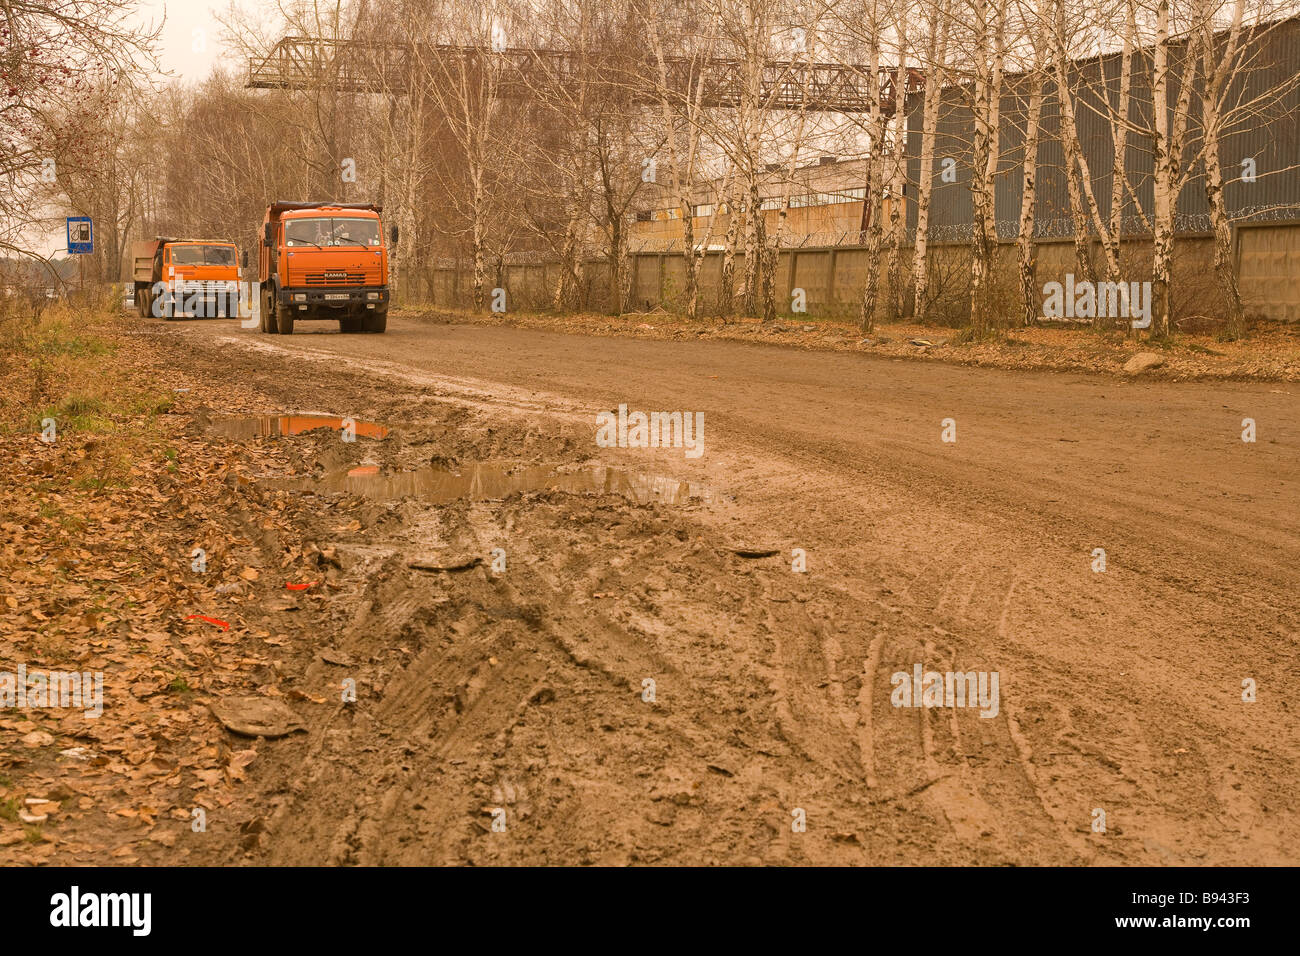 yakaterinburg ekaterinburg russia Stock Photo